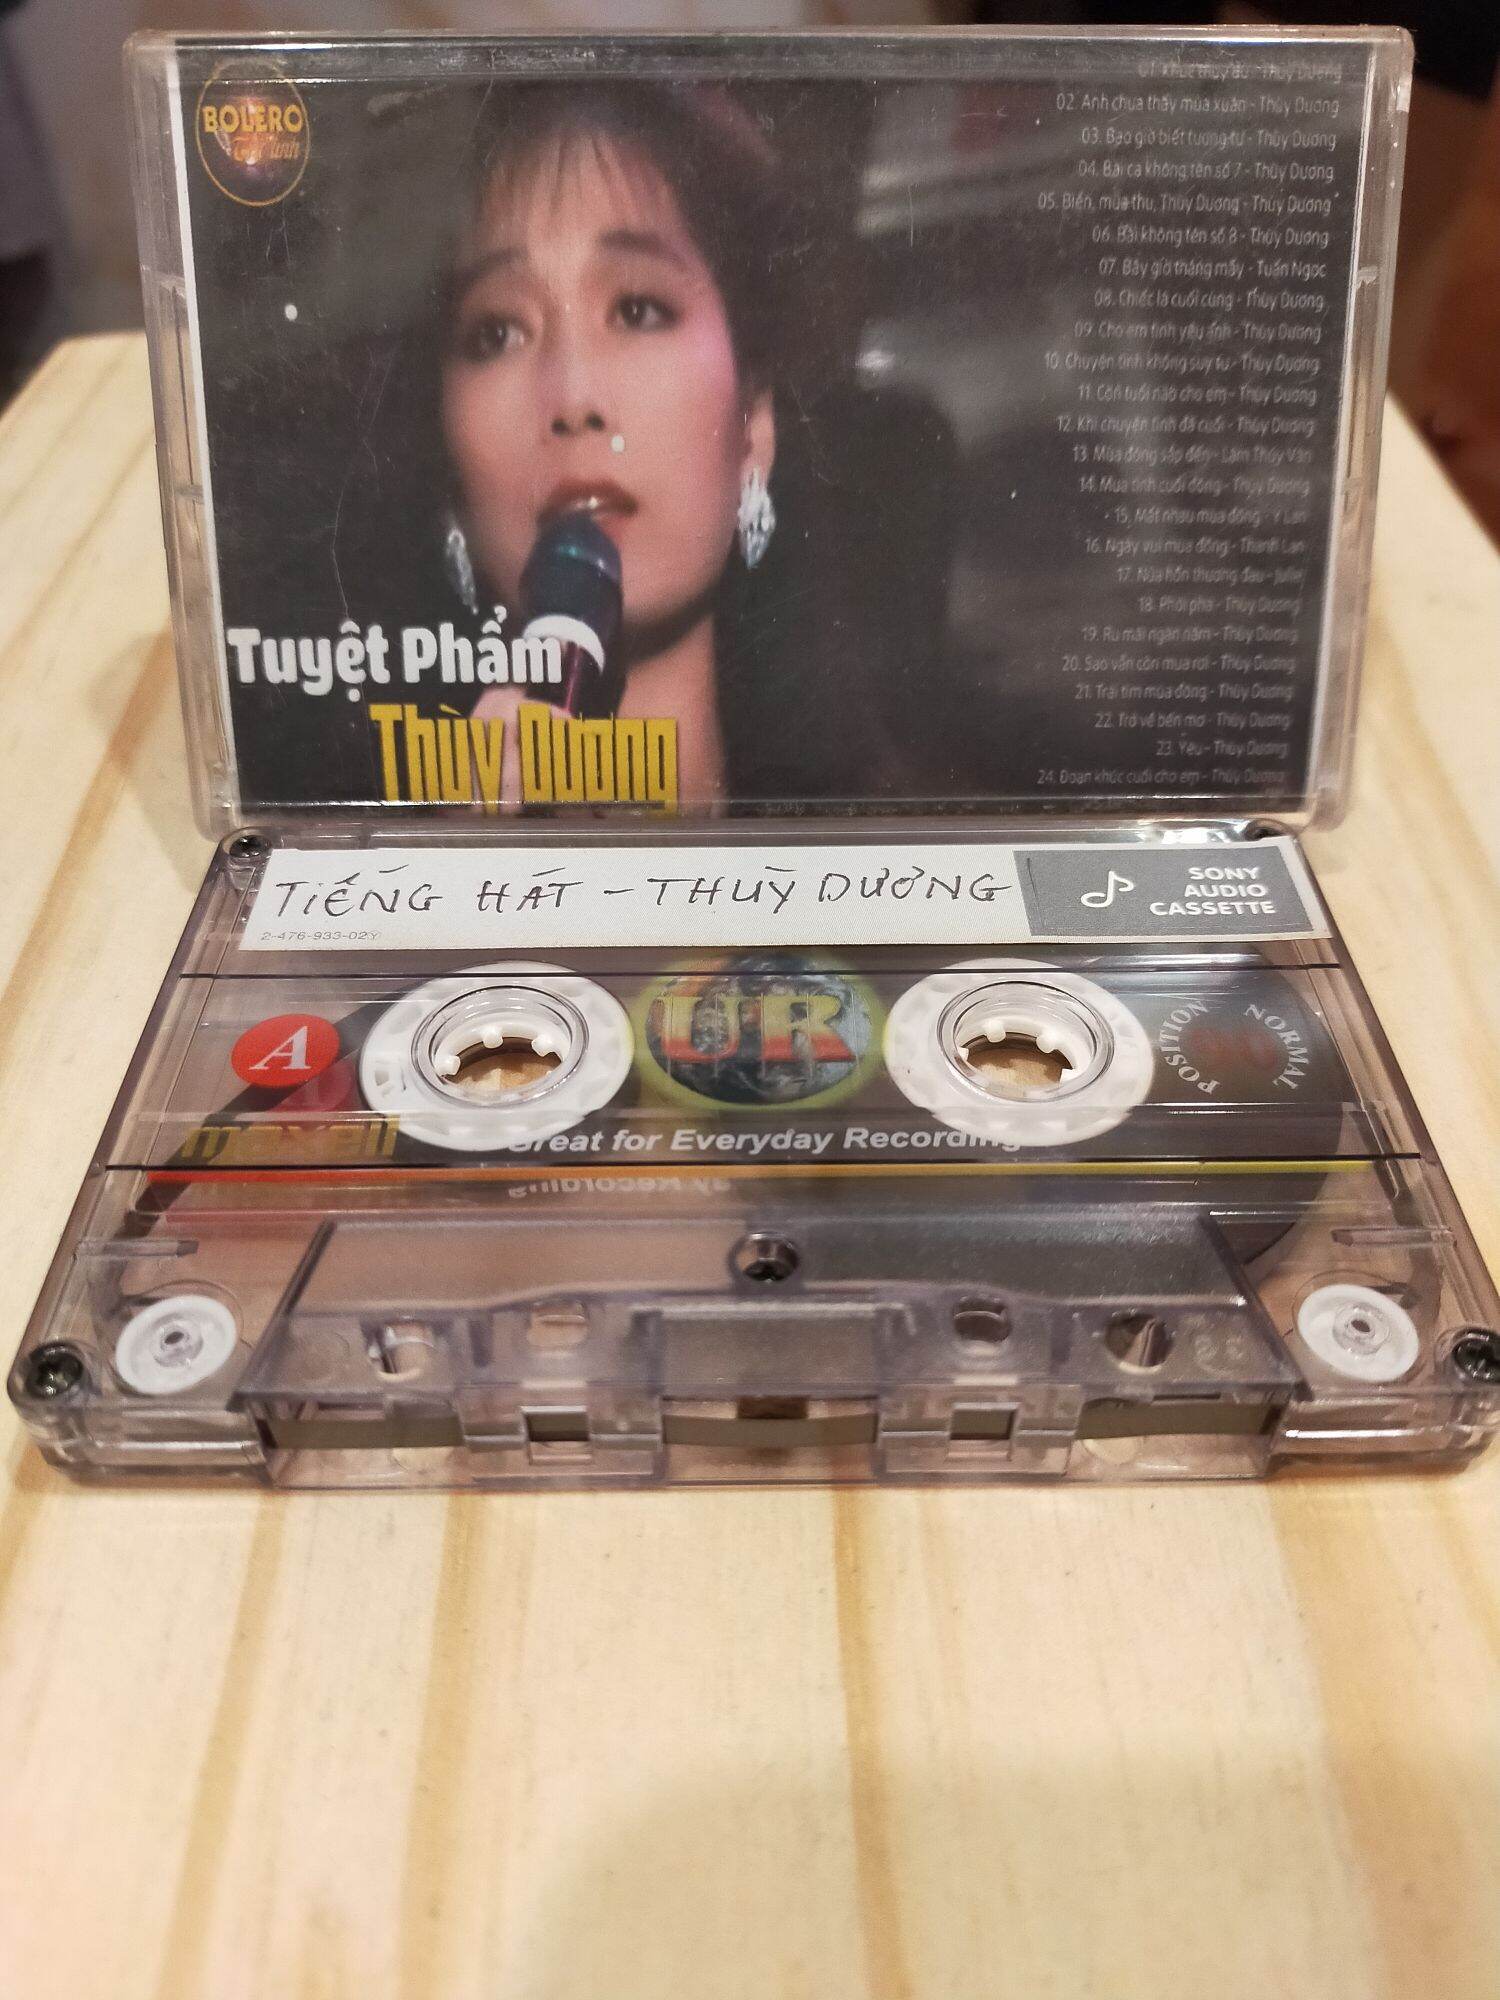 1 băng cassette maxell UR 90 phút tiếng hát thùy dương( lưu ý: đây là băng cũ